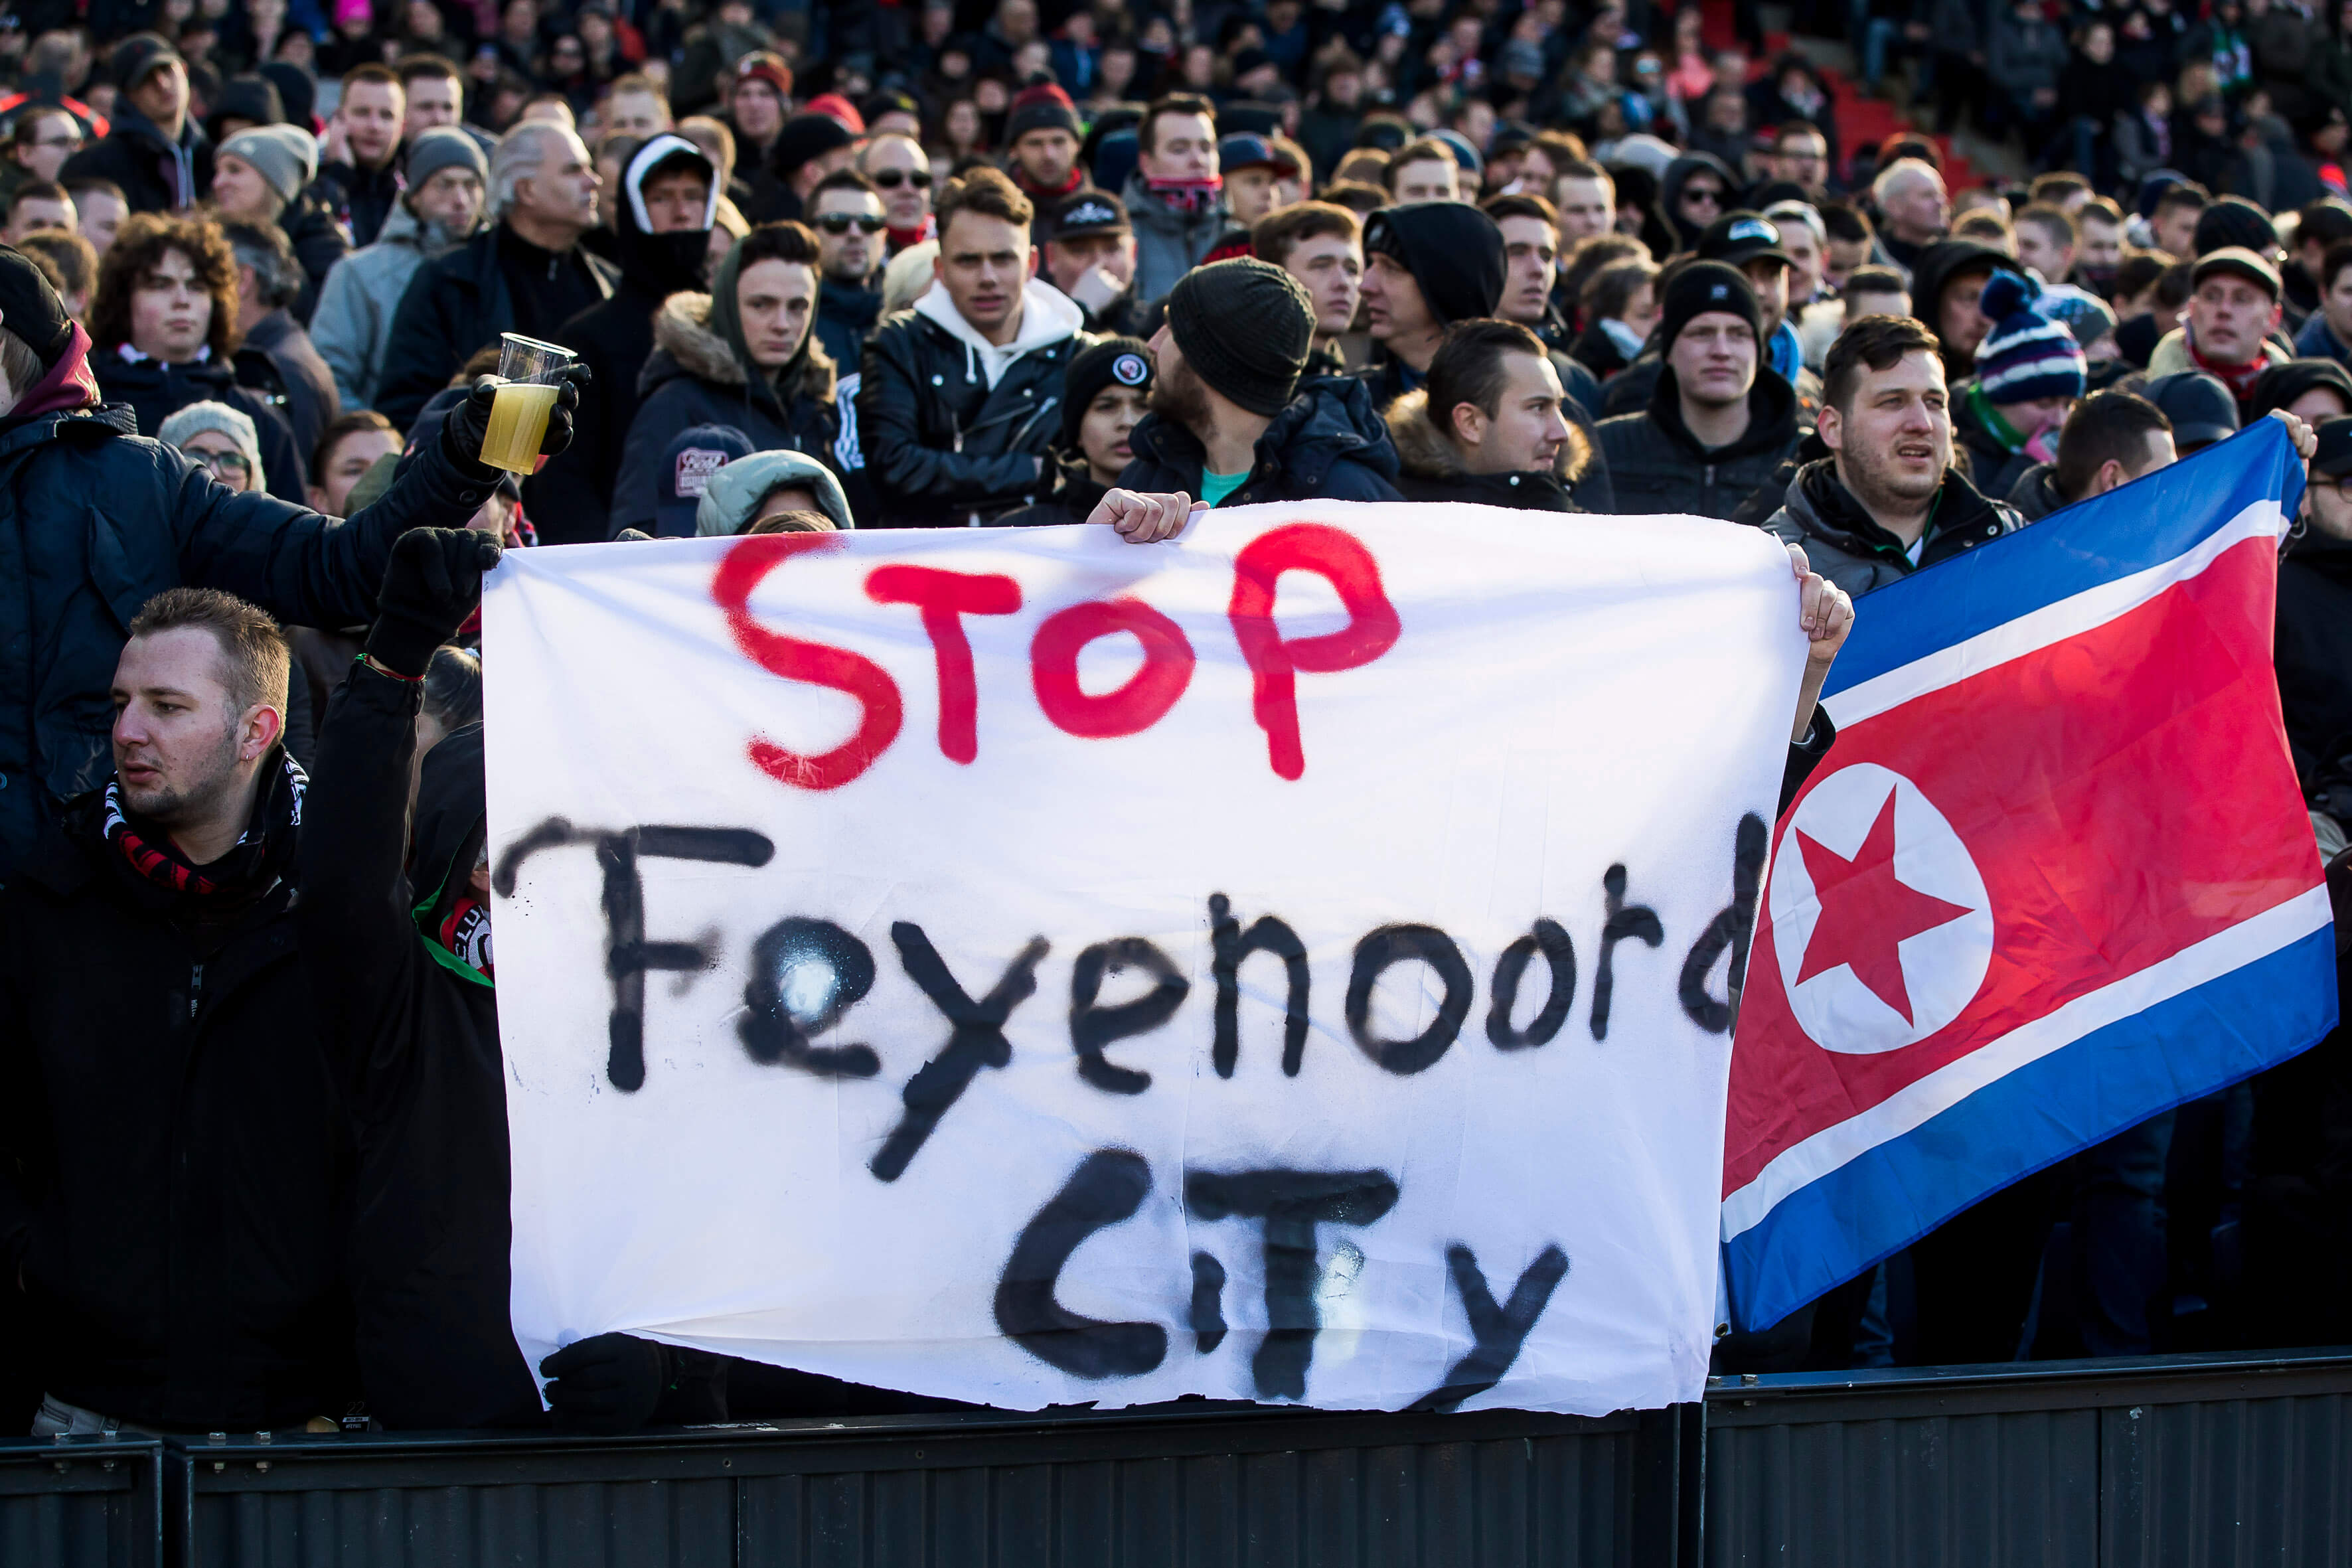 "Feyenoord wil over twaalf maanden pas beslissing nemen over Feyenoord City"; image source: Pro Shots